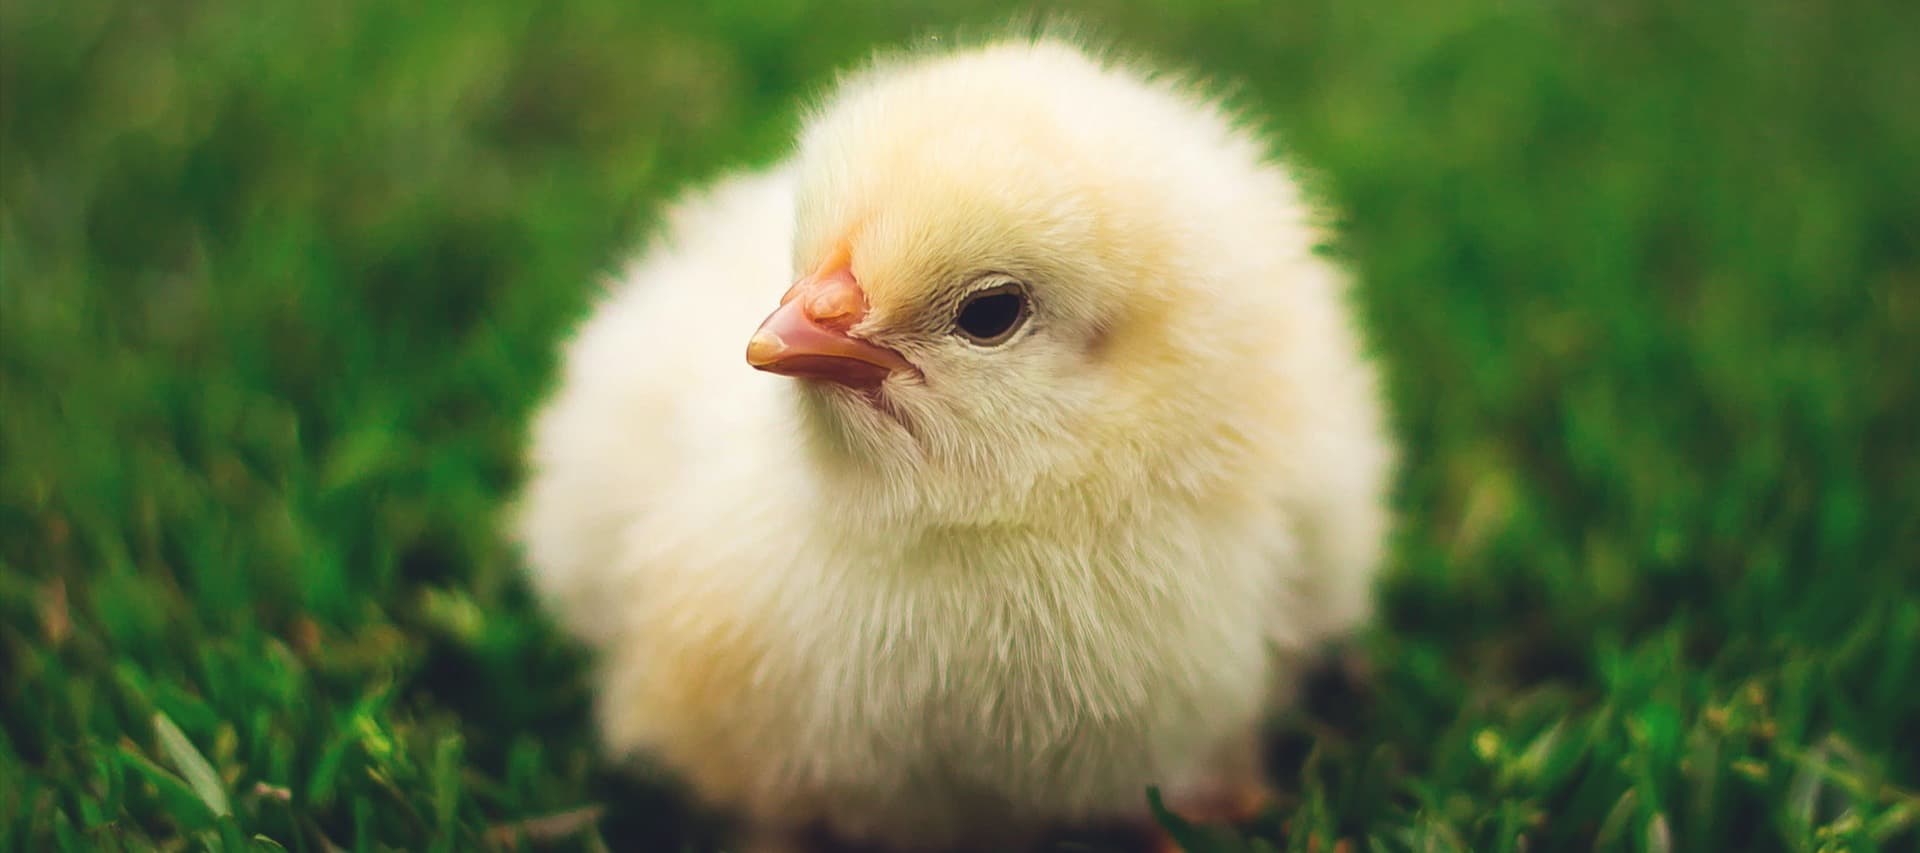 Фото новости: "WSJ: Американцы начали заводить цыплят в надежде сэкономить на покупке яиц"